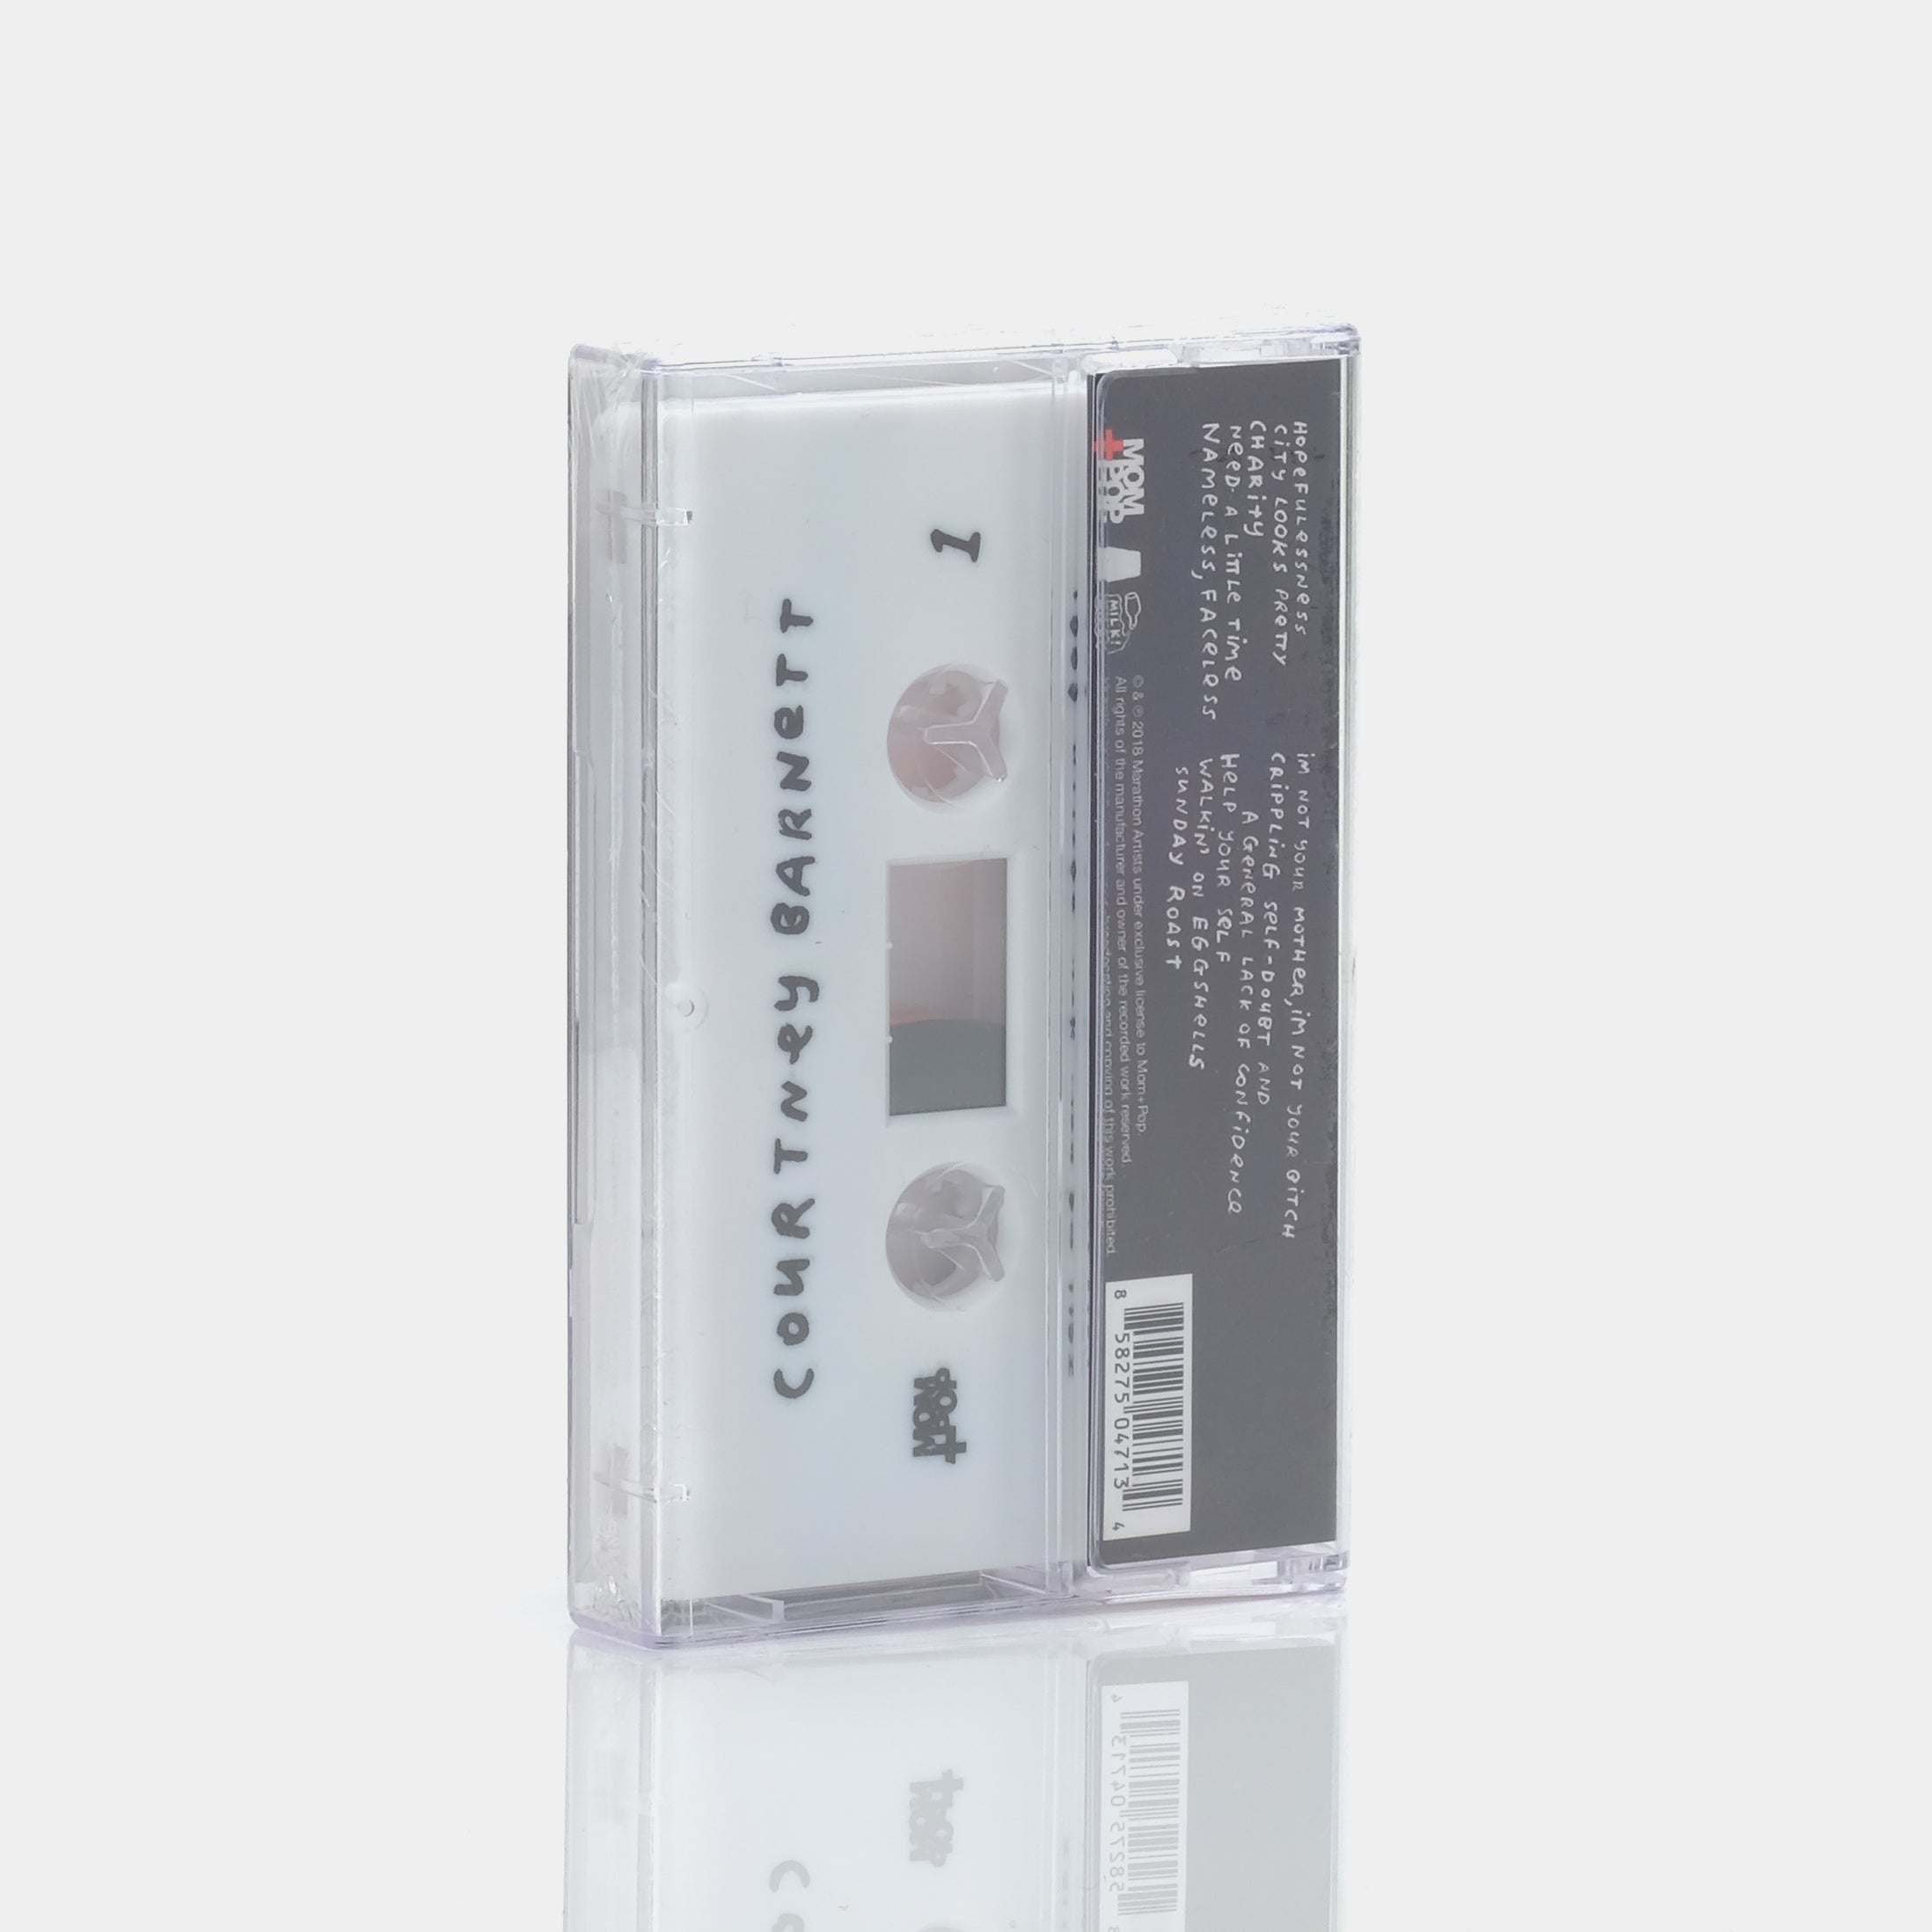 Courtney Barnett - Tell Me How You Really Feel Cassette Tape